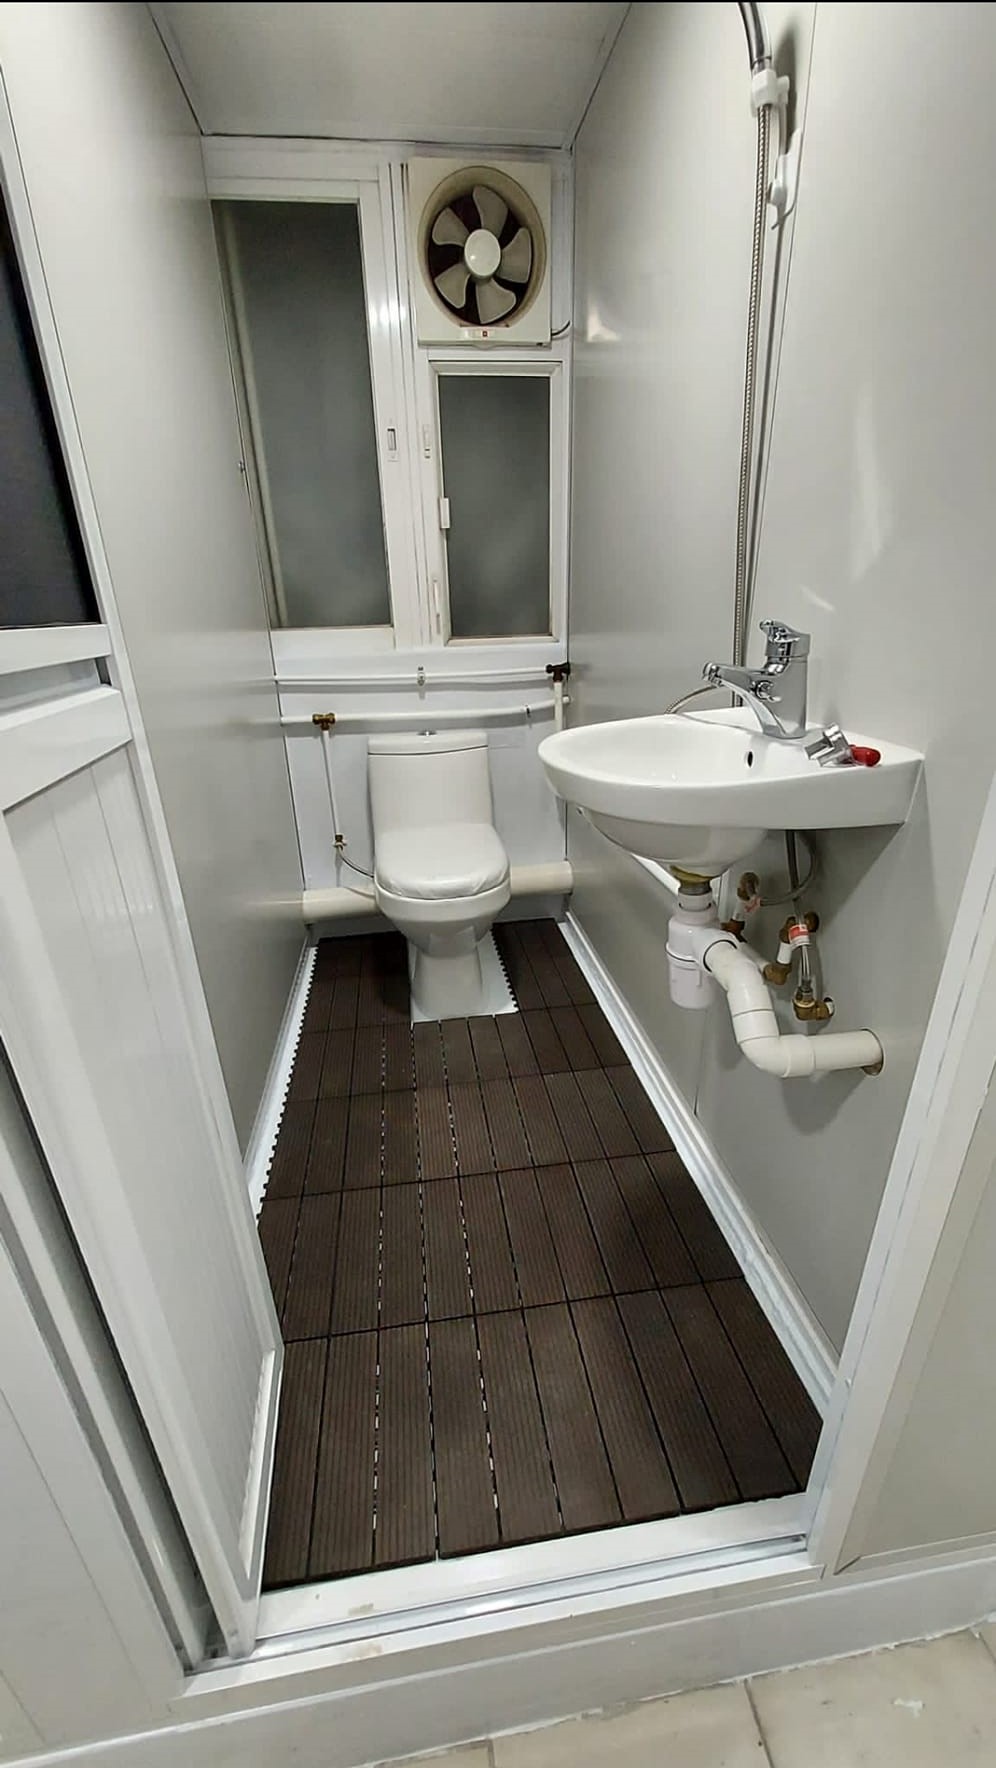 廁所甚為狹窄。網上圖片